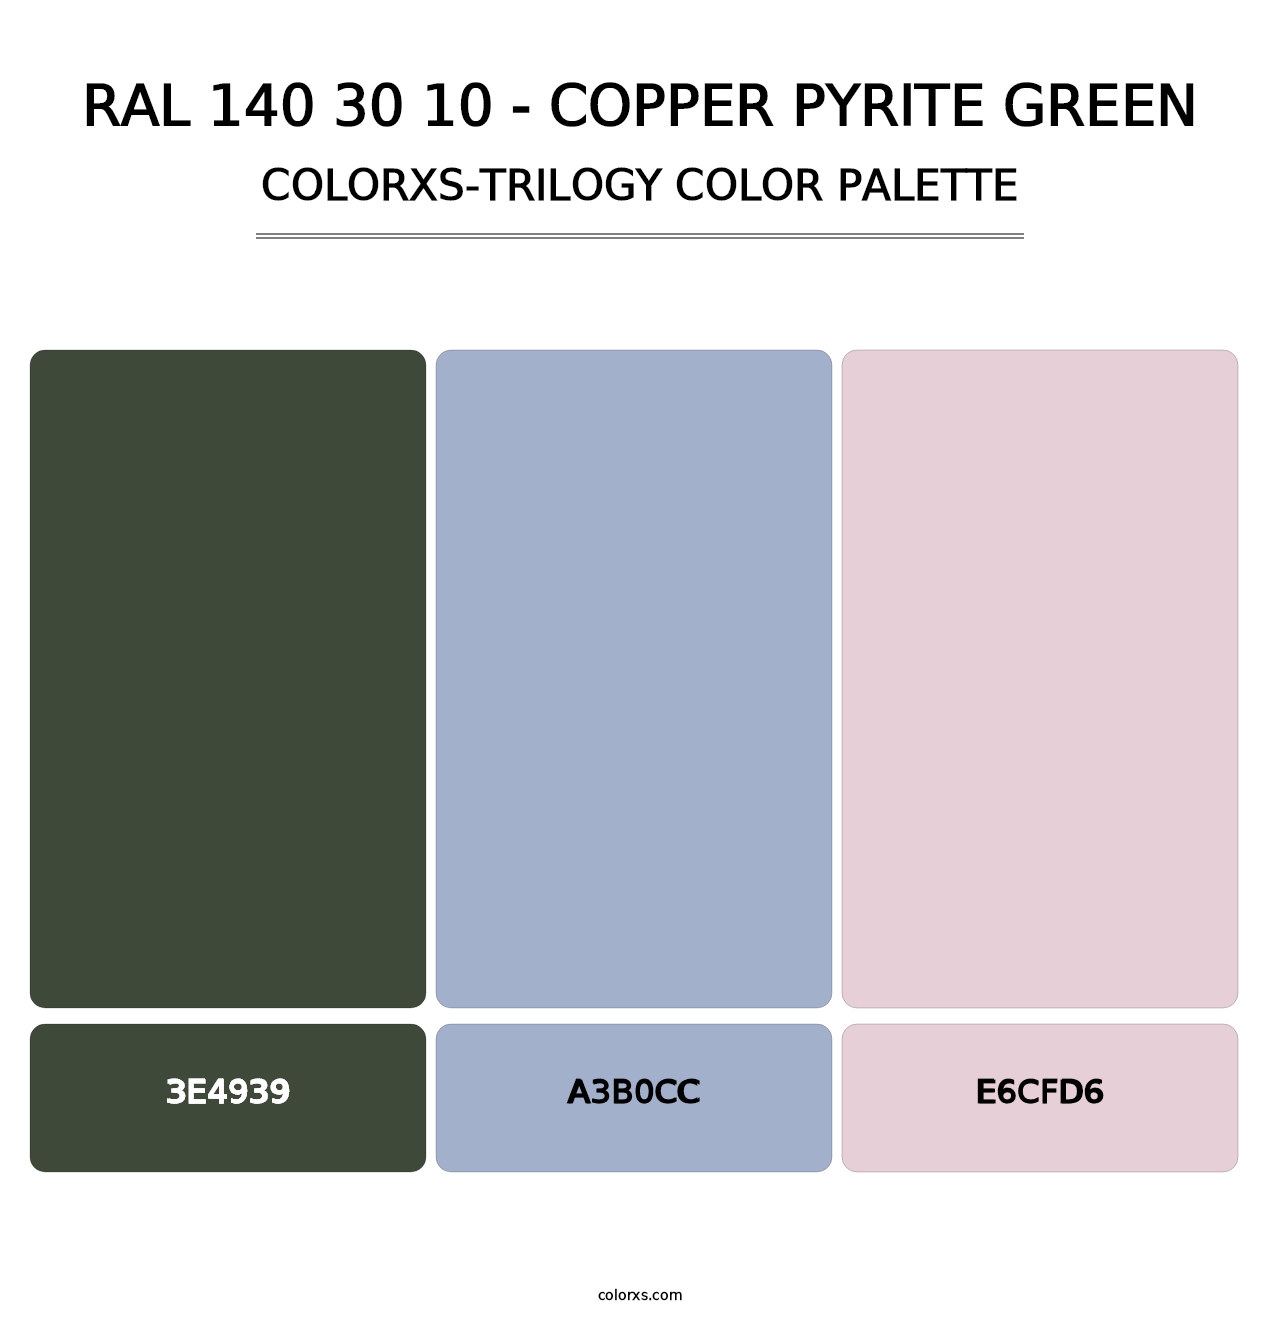 RAL 140 30 10 - Copper Pyrite Green - Colorxs Trilogy Palette